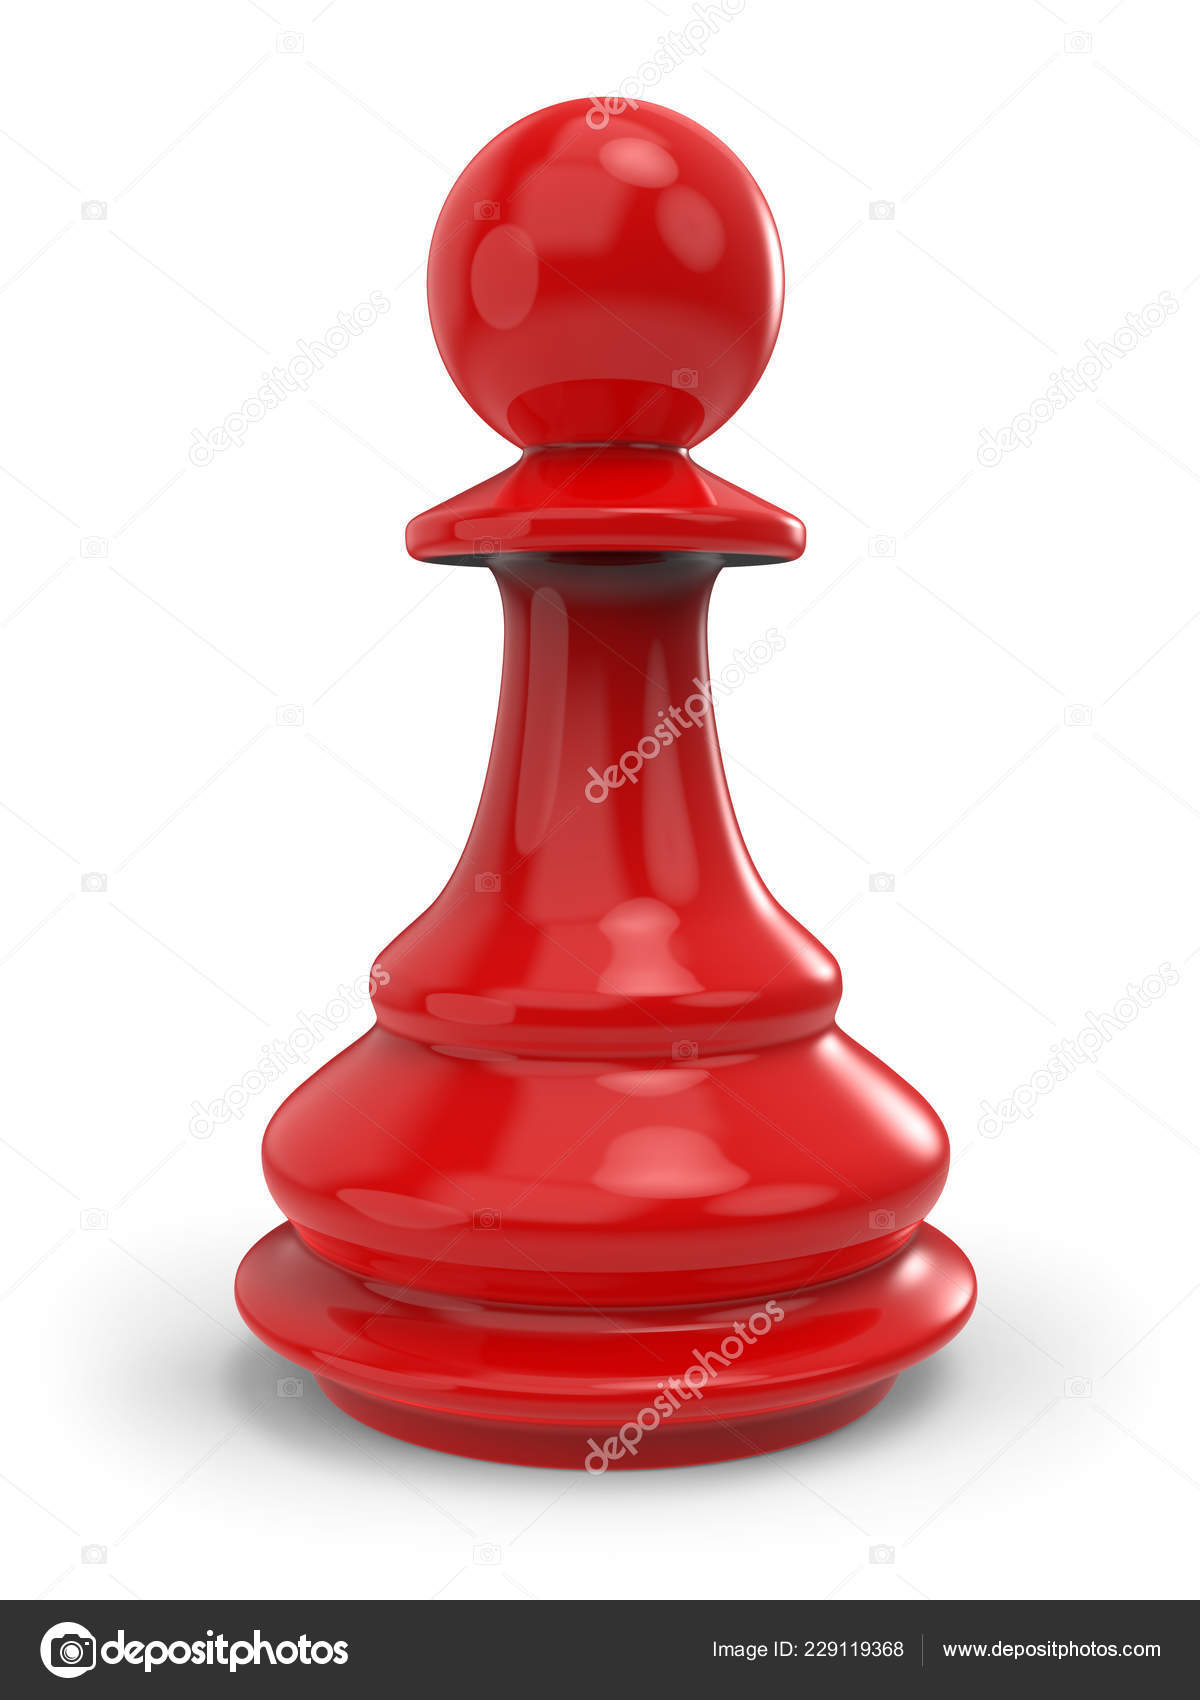 Peão de xadrez vermelho com a: ilustrações stock 165835106